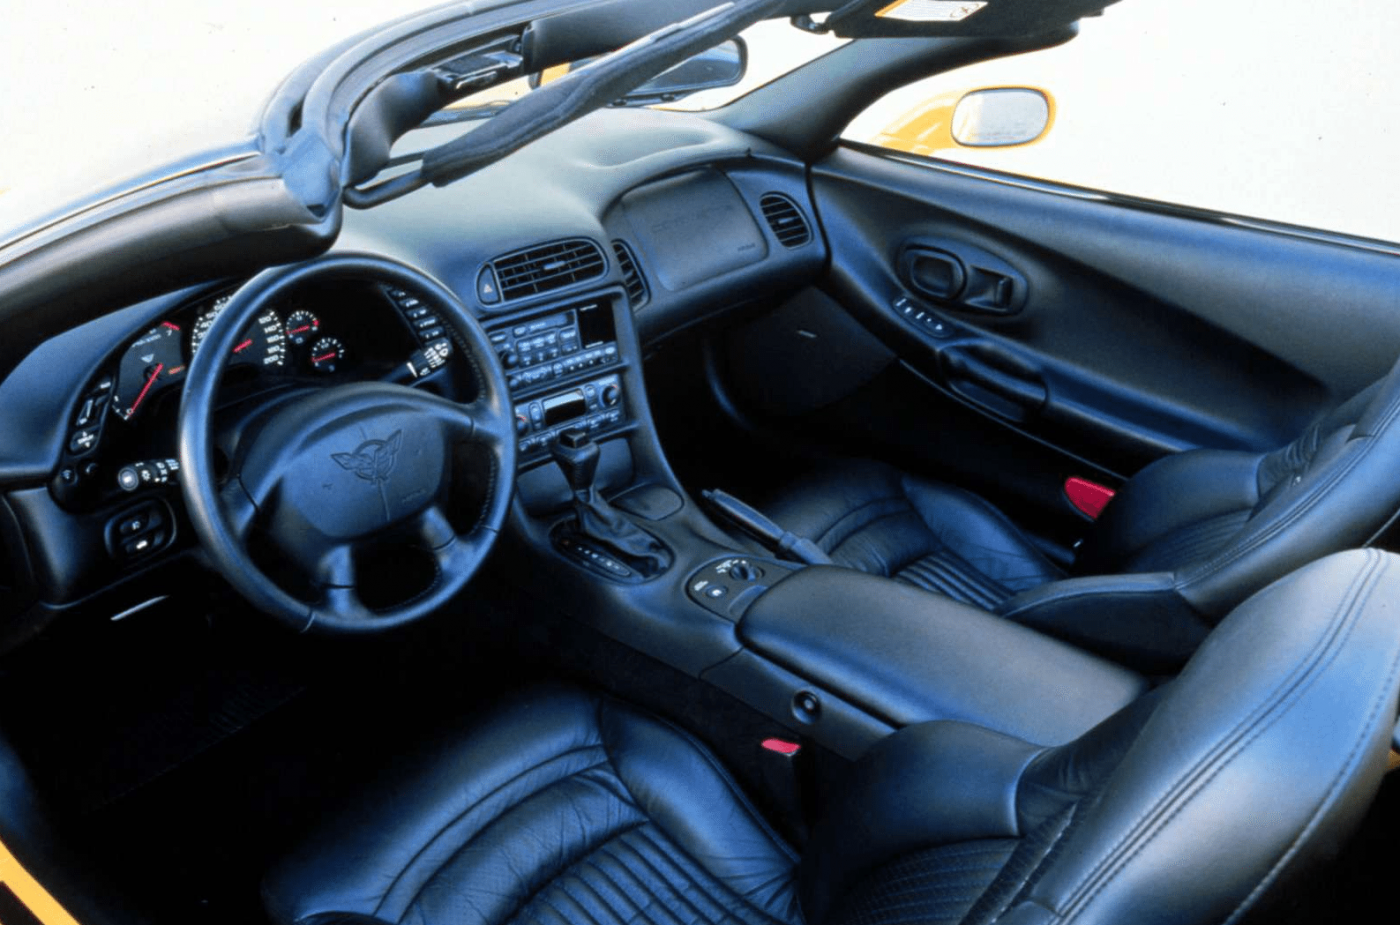 2000 Corvette Interior